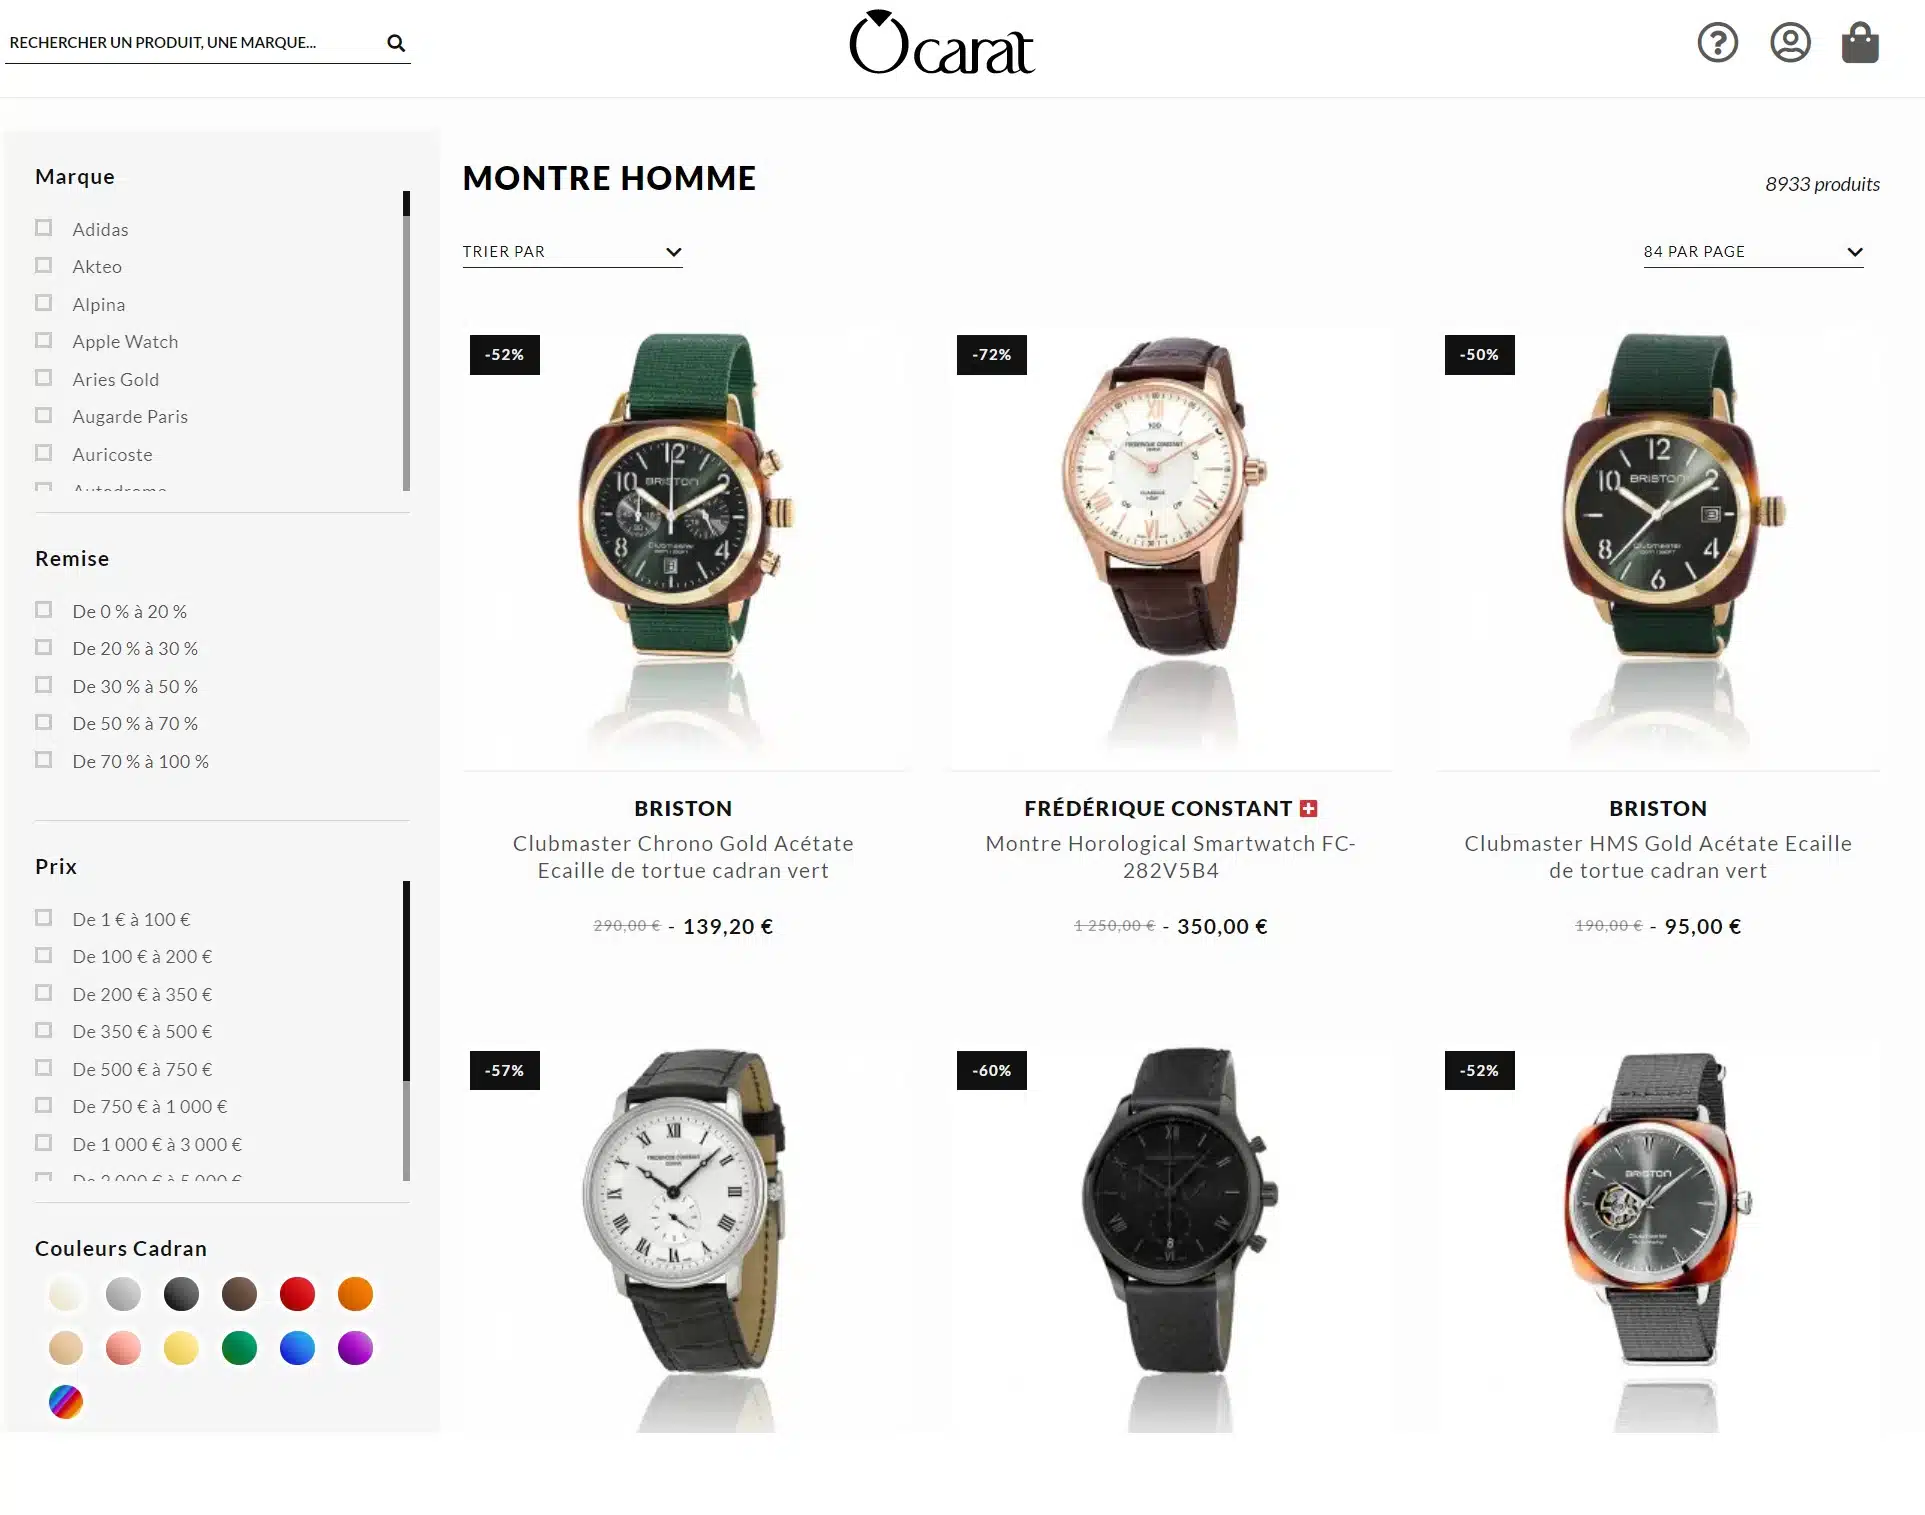 Meilleurs sites pour acheter une montre - Ocarat